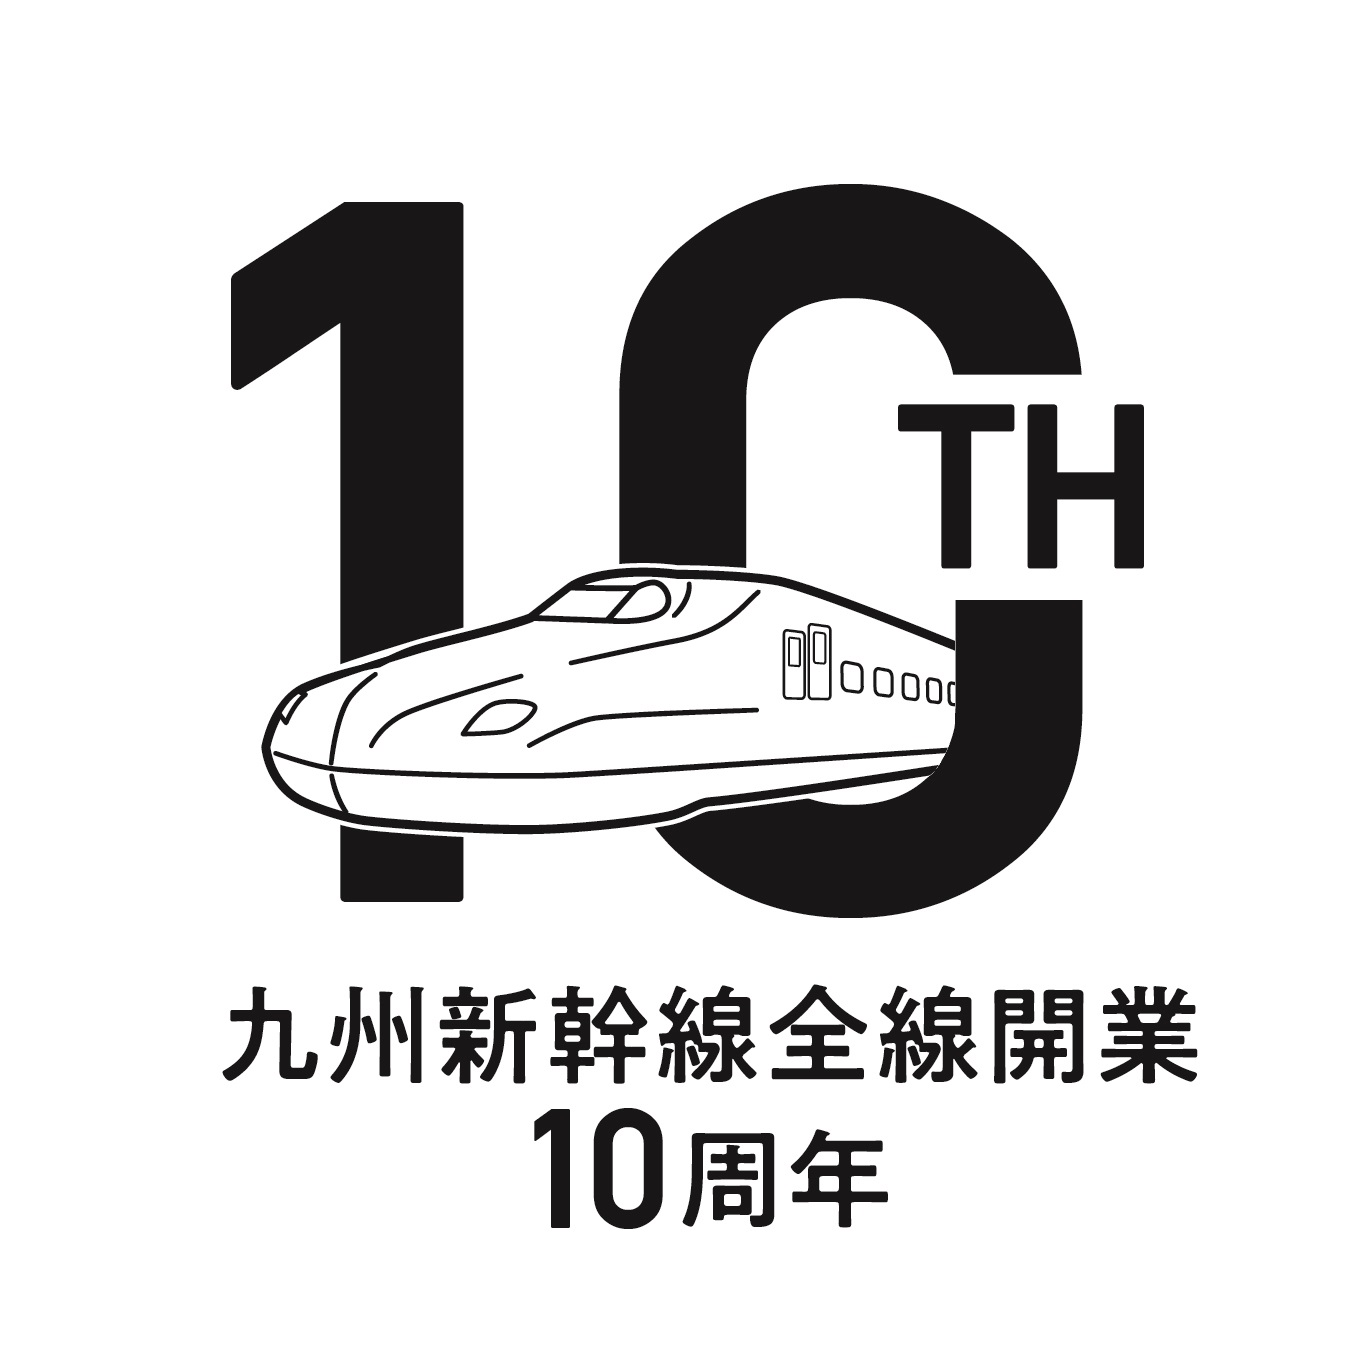 Jr 電車利用 熊本旅行 ツアー 九州発 近畿日本ツーリスト